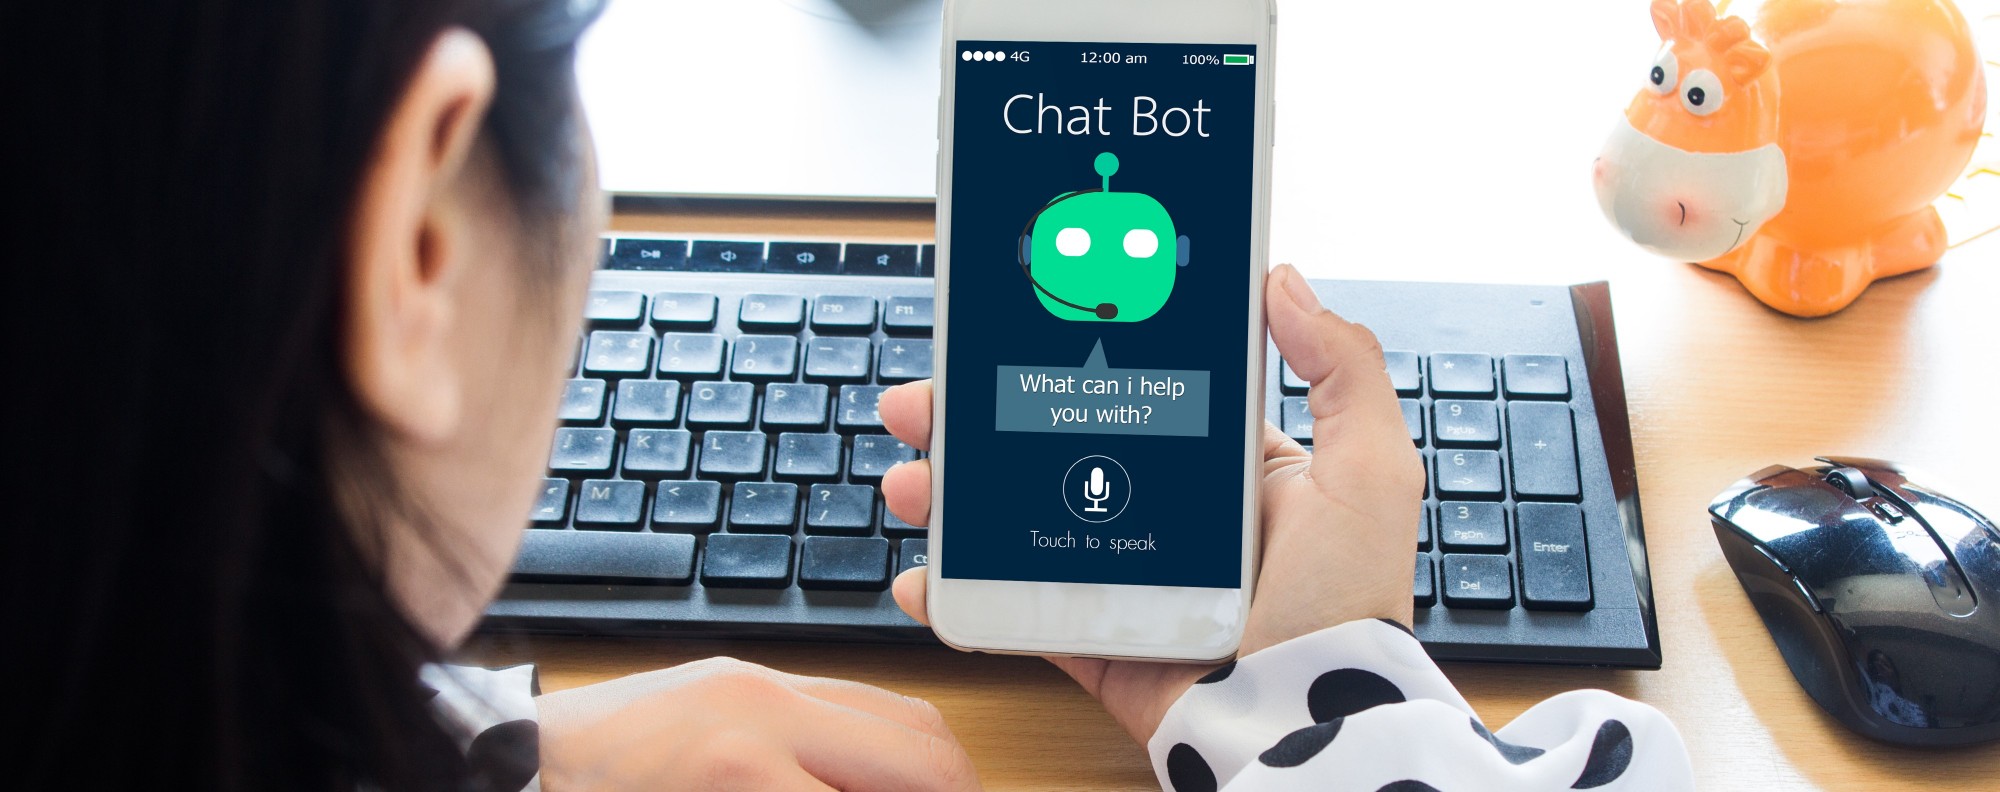 Chatbot emozionali: abbiamo bisogno di un amico digitale